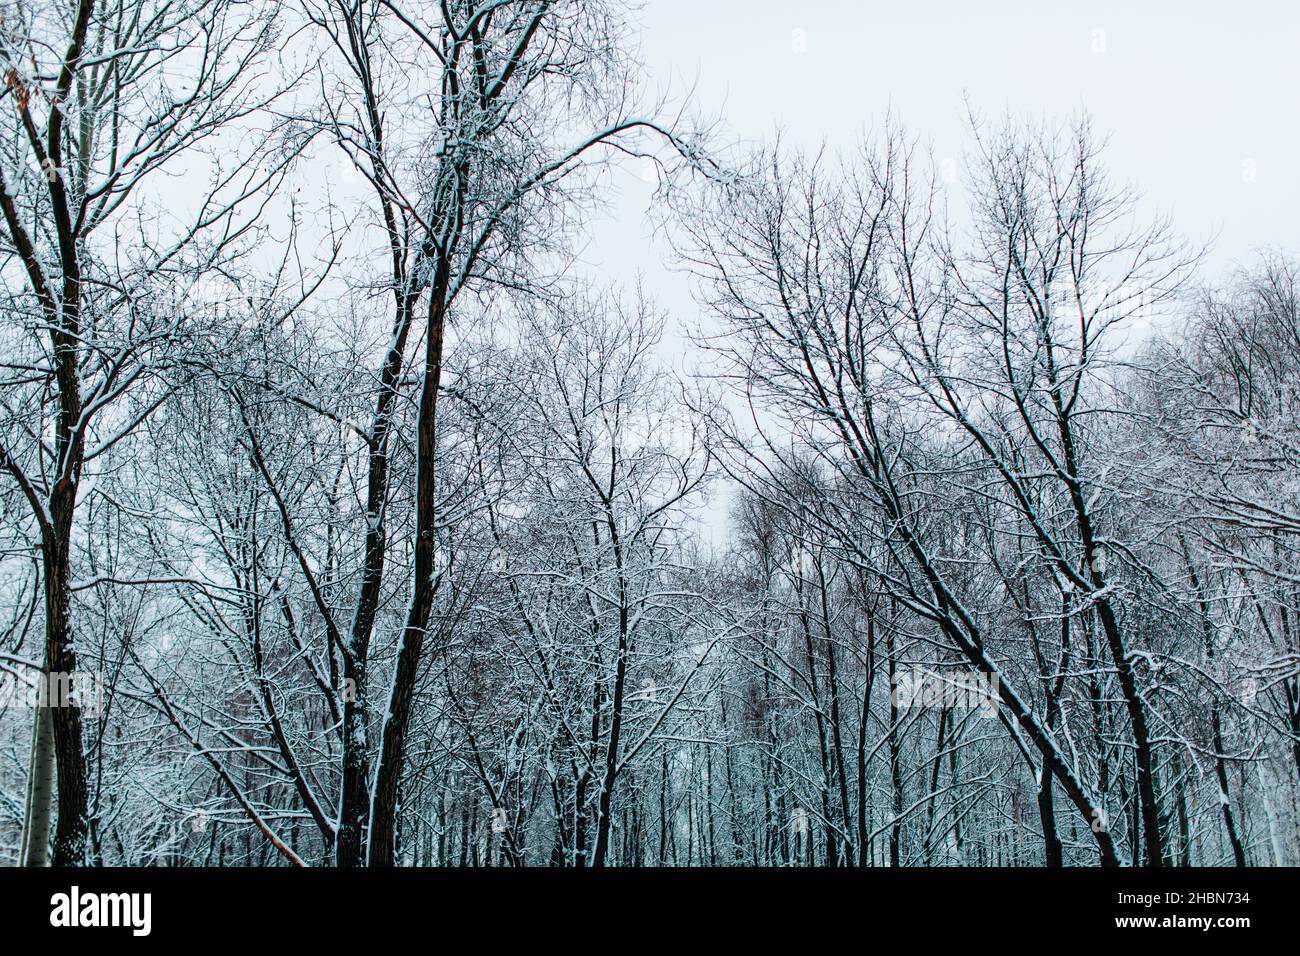 Hohe Bäume, die im Winterwald mit frischem, flauschigen weißen Schnee bedeckt sind. Wintersaison in der Natur. Stockfoto